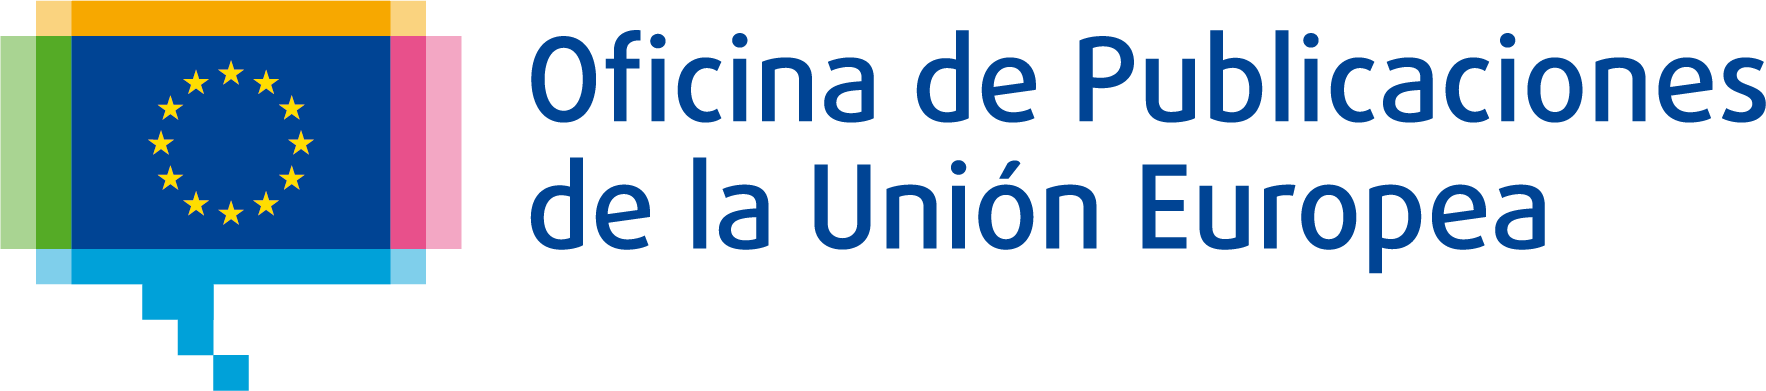 OPUE - Oficina de Publicaciones de la Unión Europea